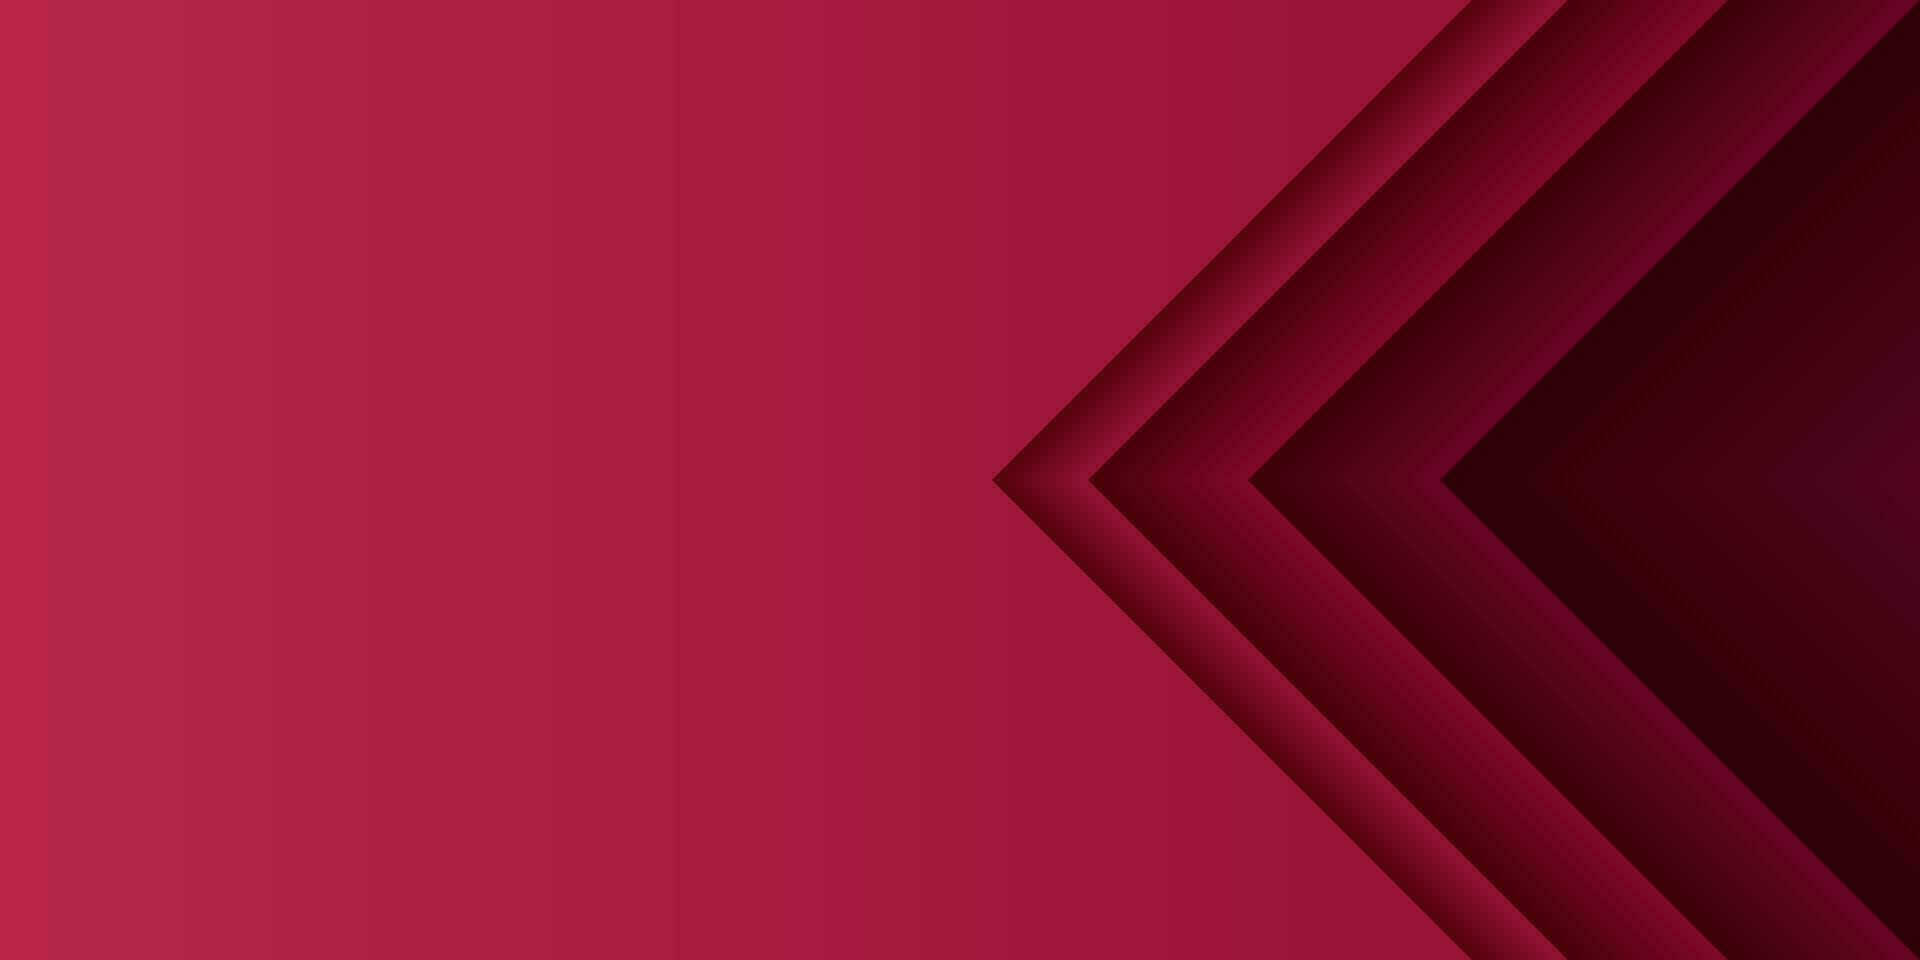 3d Gradient abstrakt Hintergrund. Papier Schnitt Dreieck Muster mit rot Lagen. Farbe viva Magenta. Design Element zum Karte, Abdeckung, Banner, Poster, Hintergrund, Mauer. Vektor Illustration.